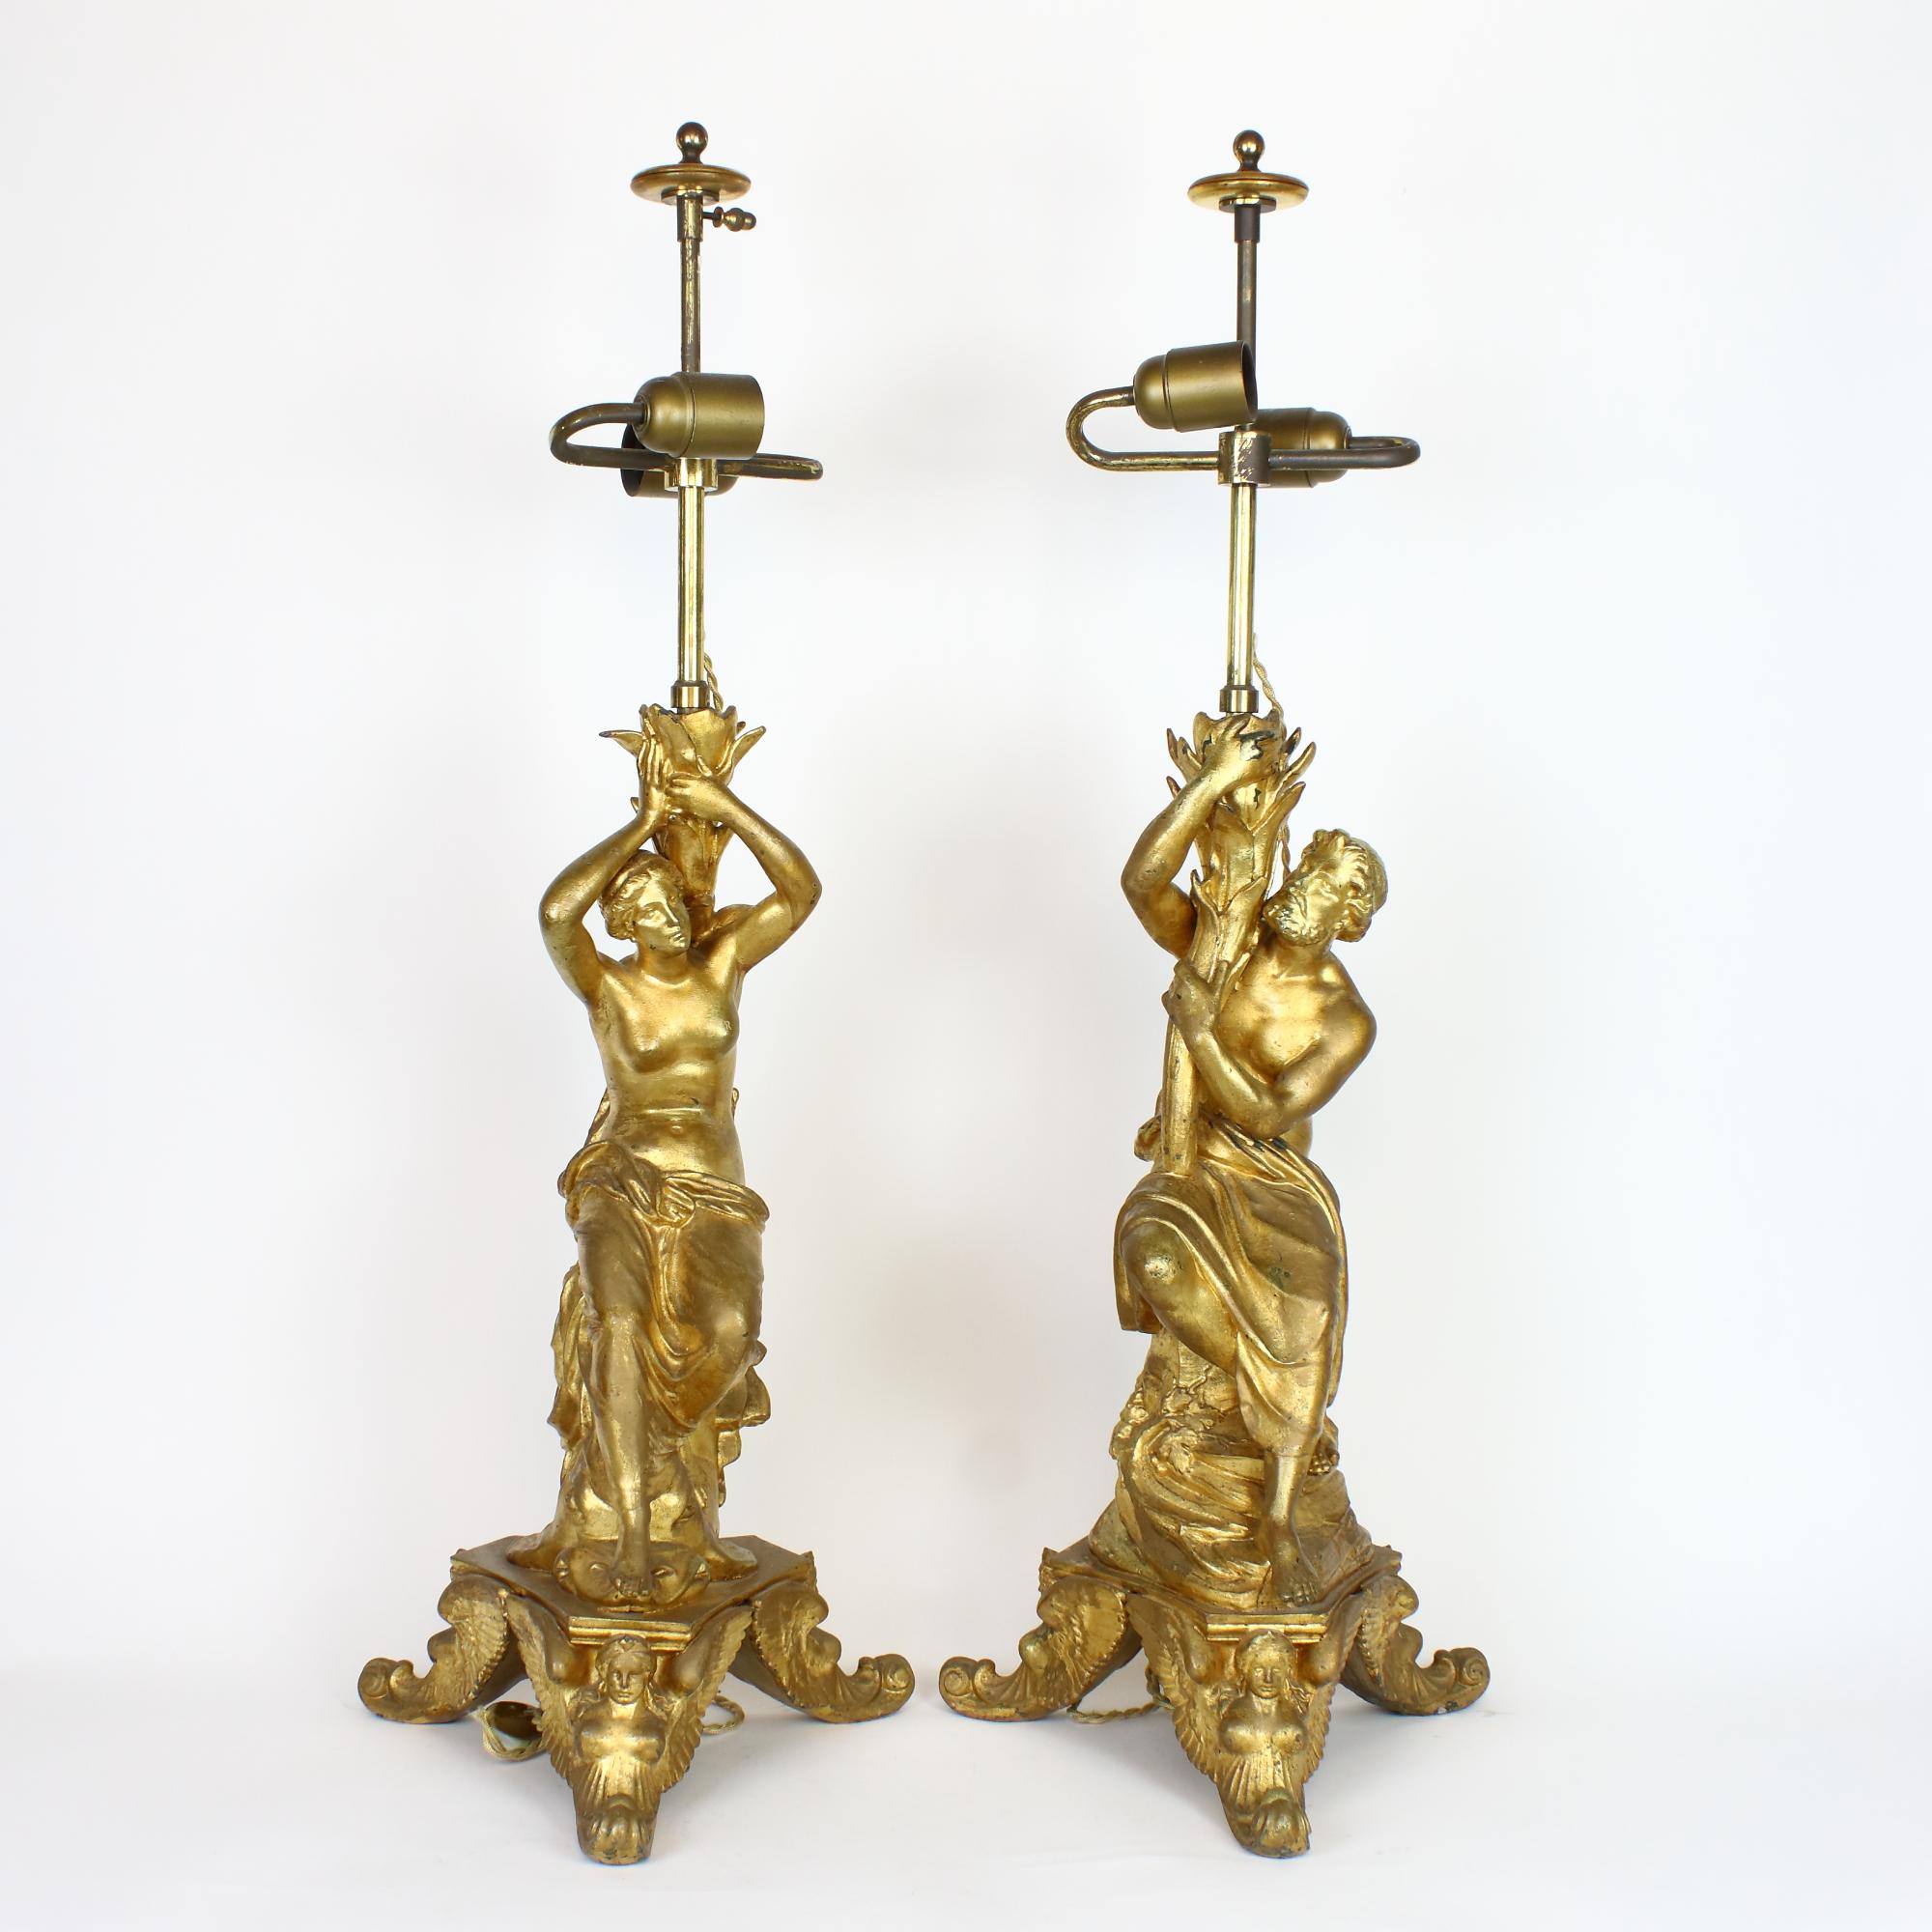 Seltenes Paar italienischer Tischlampen im Barockstil mit mythologischen Figuren aus dem 19.

Die dreibeinigen Sockel mit Rollfüßen, die klassische Sphinxfiguren darstellen, tragen jeweils eine männliche und eine weibliche mythologische Figur: die